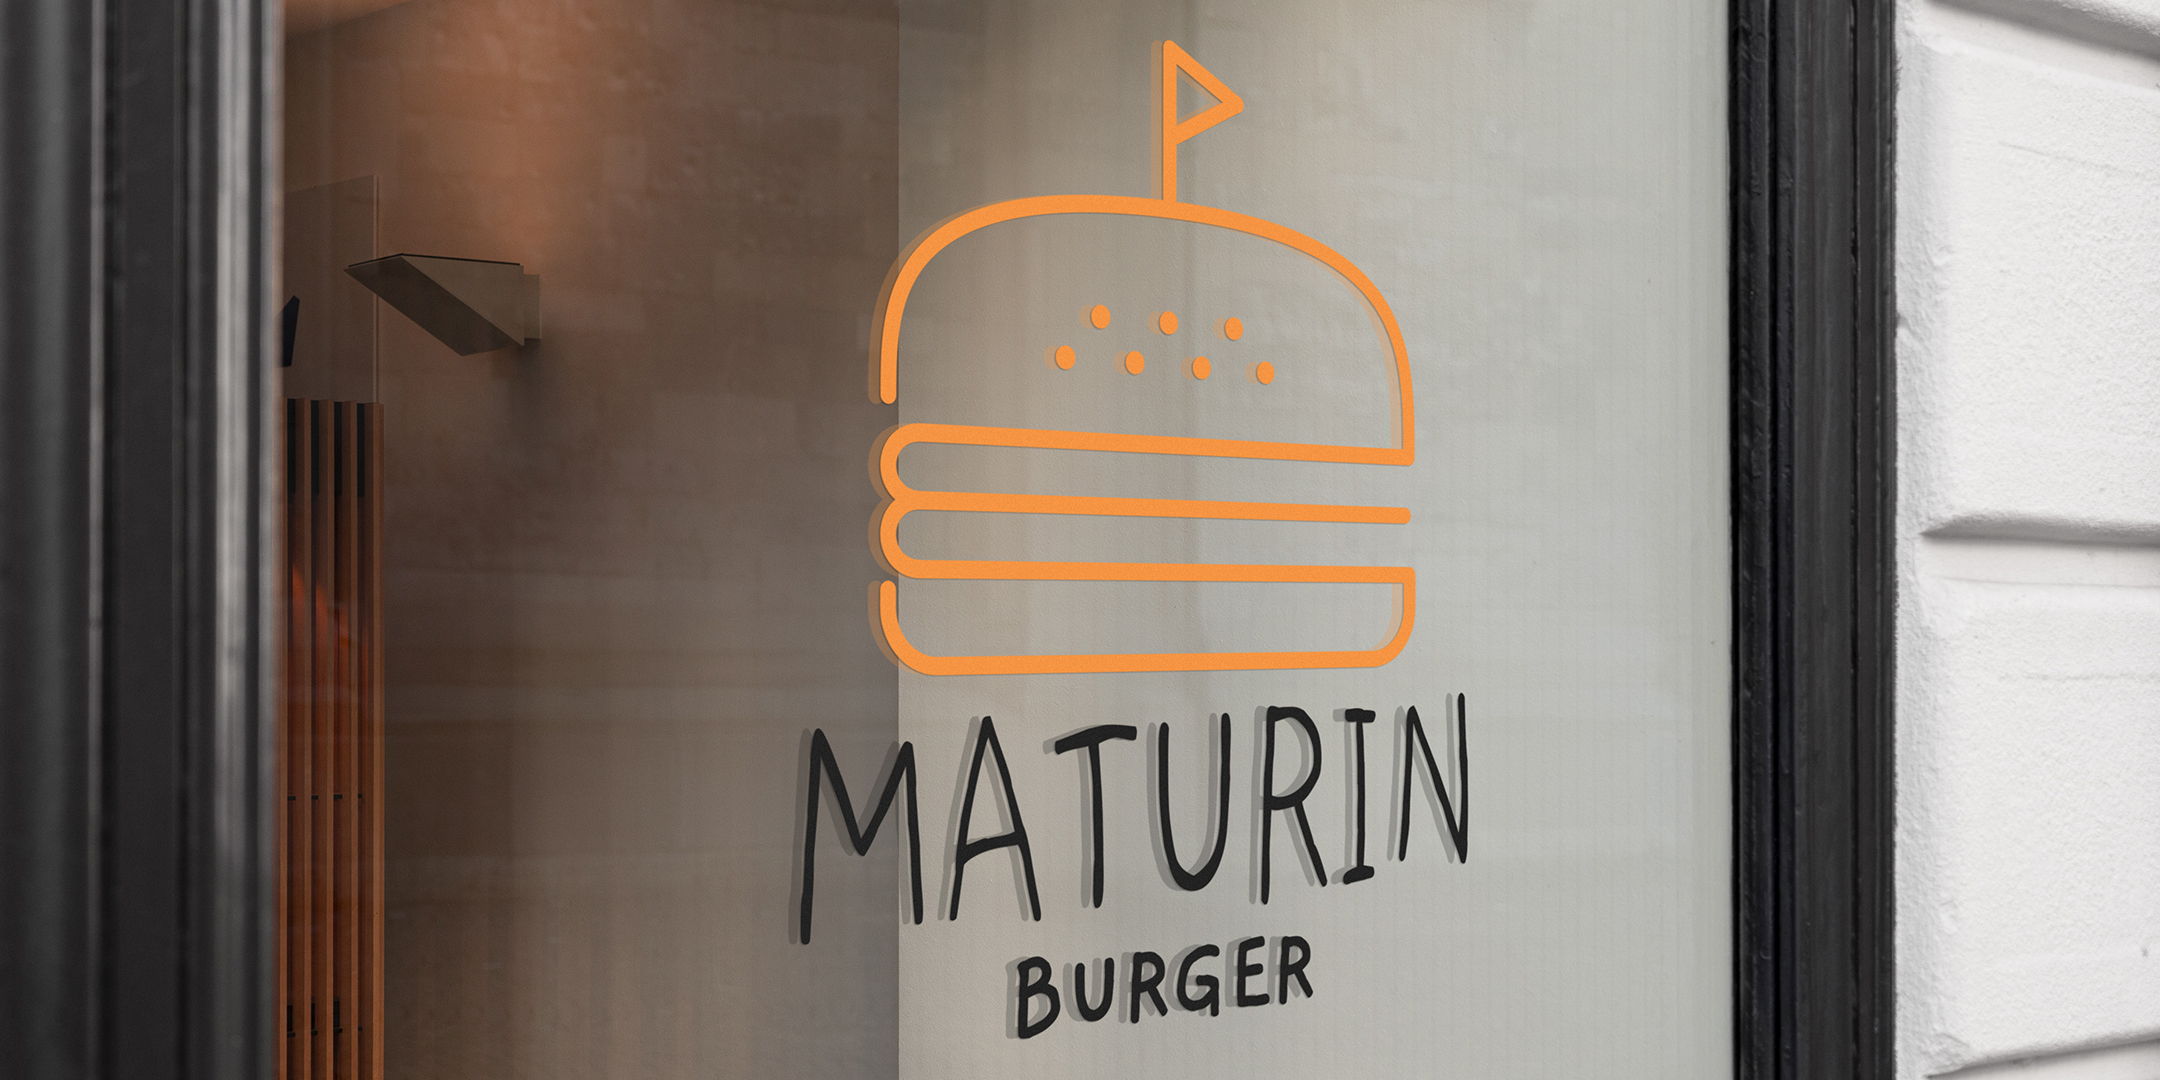 Photographie du logo de Maturin Burger sur une vitrine de restaurant, burger jaune et écriture noire.